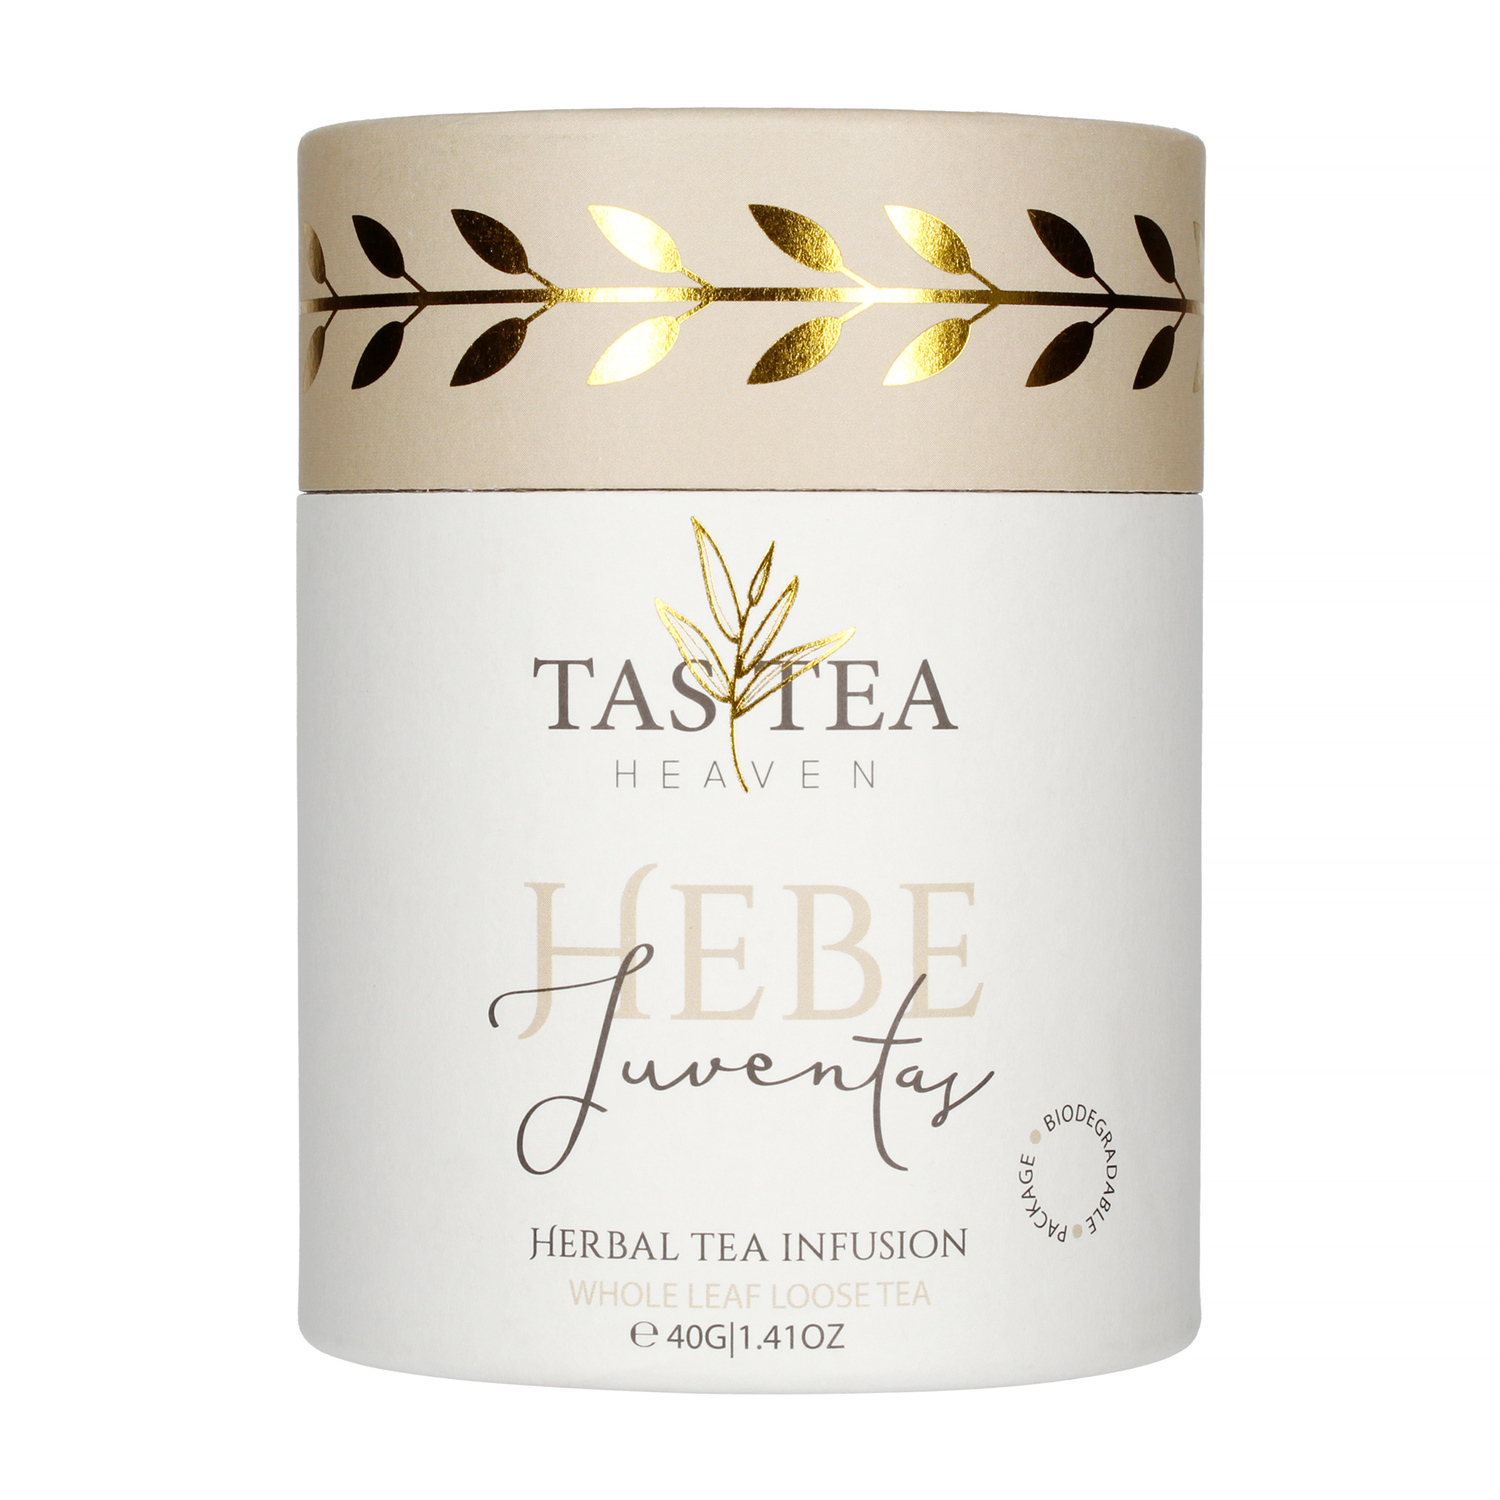 Tastea Heaven - Wellbeing Hebe - Loose tea 40g